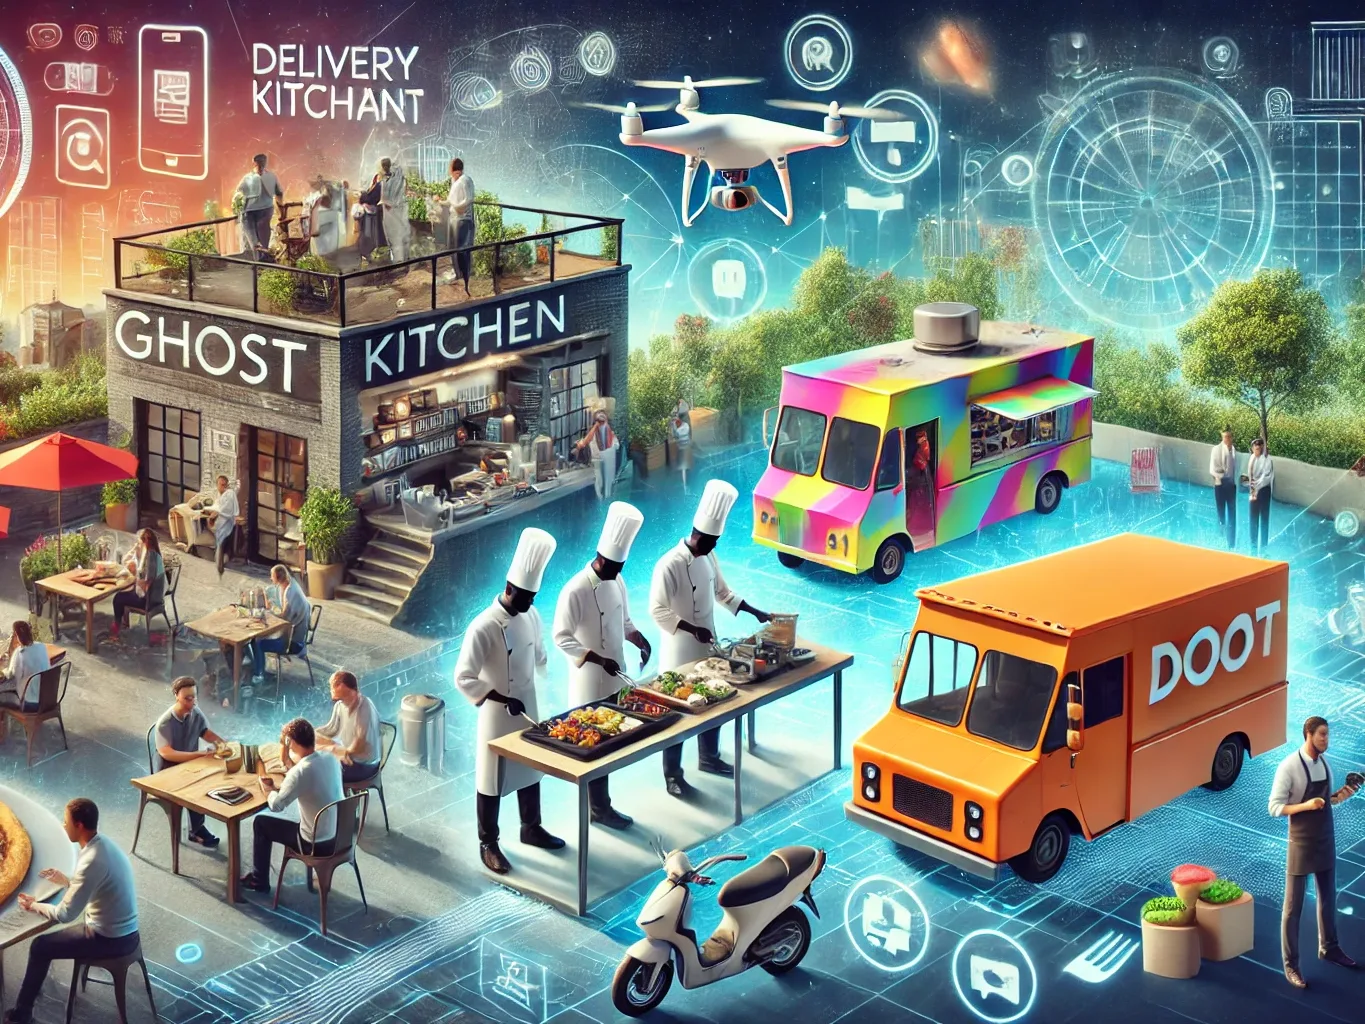 https://blog.oraviaggiando.it/ghost-kitchen-pop-up-restaurant-e-food-truck-i-modelli-di-business-alternativi-nel-mondo-della-ristorazione/